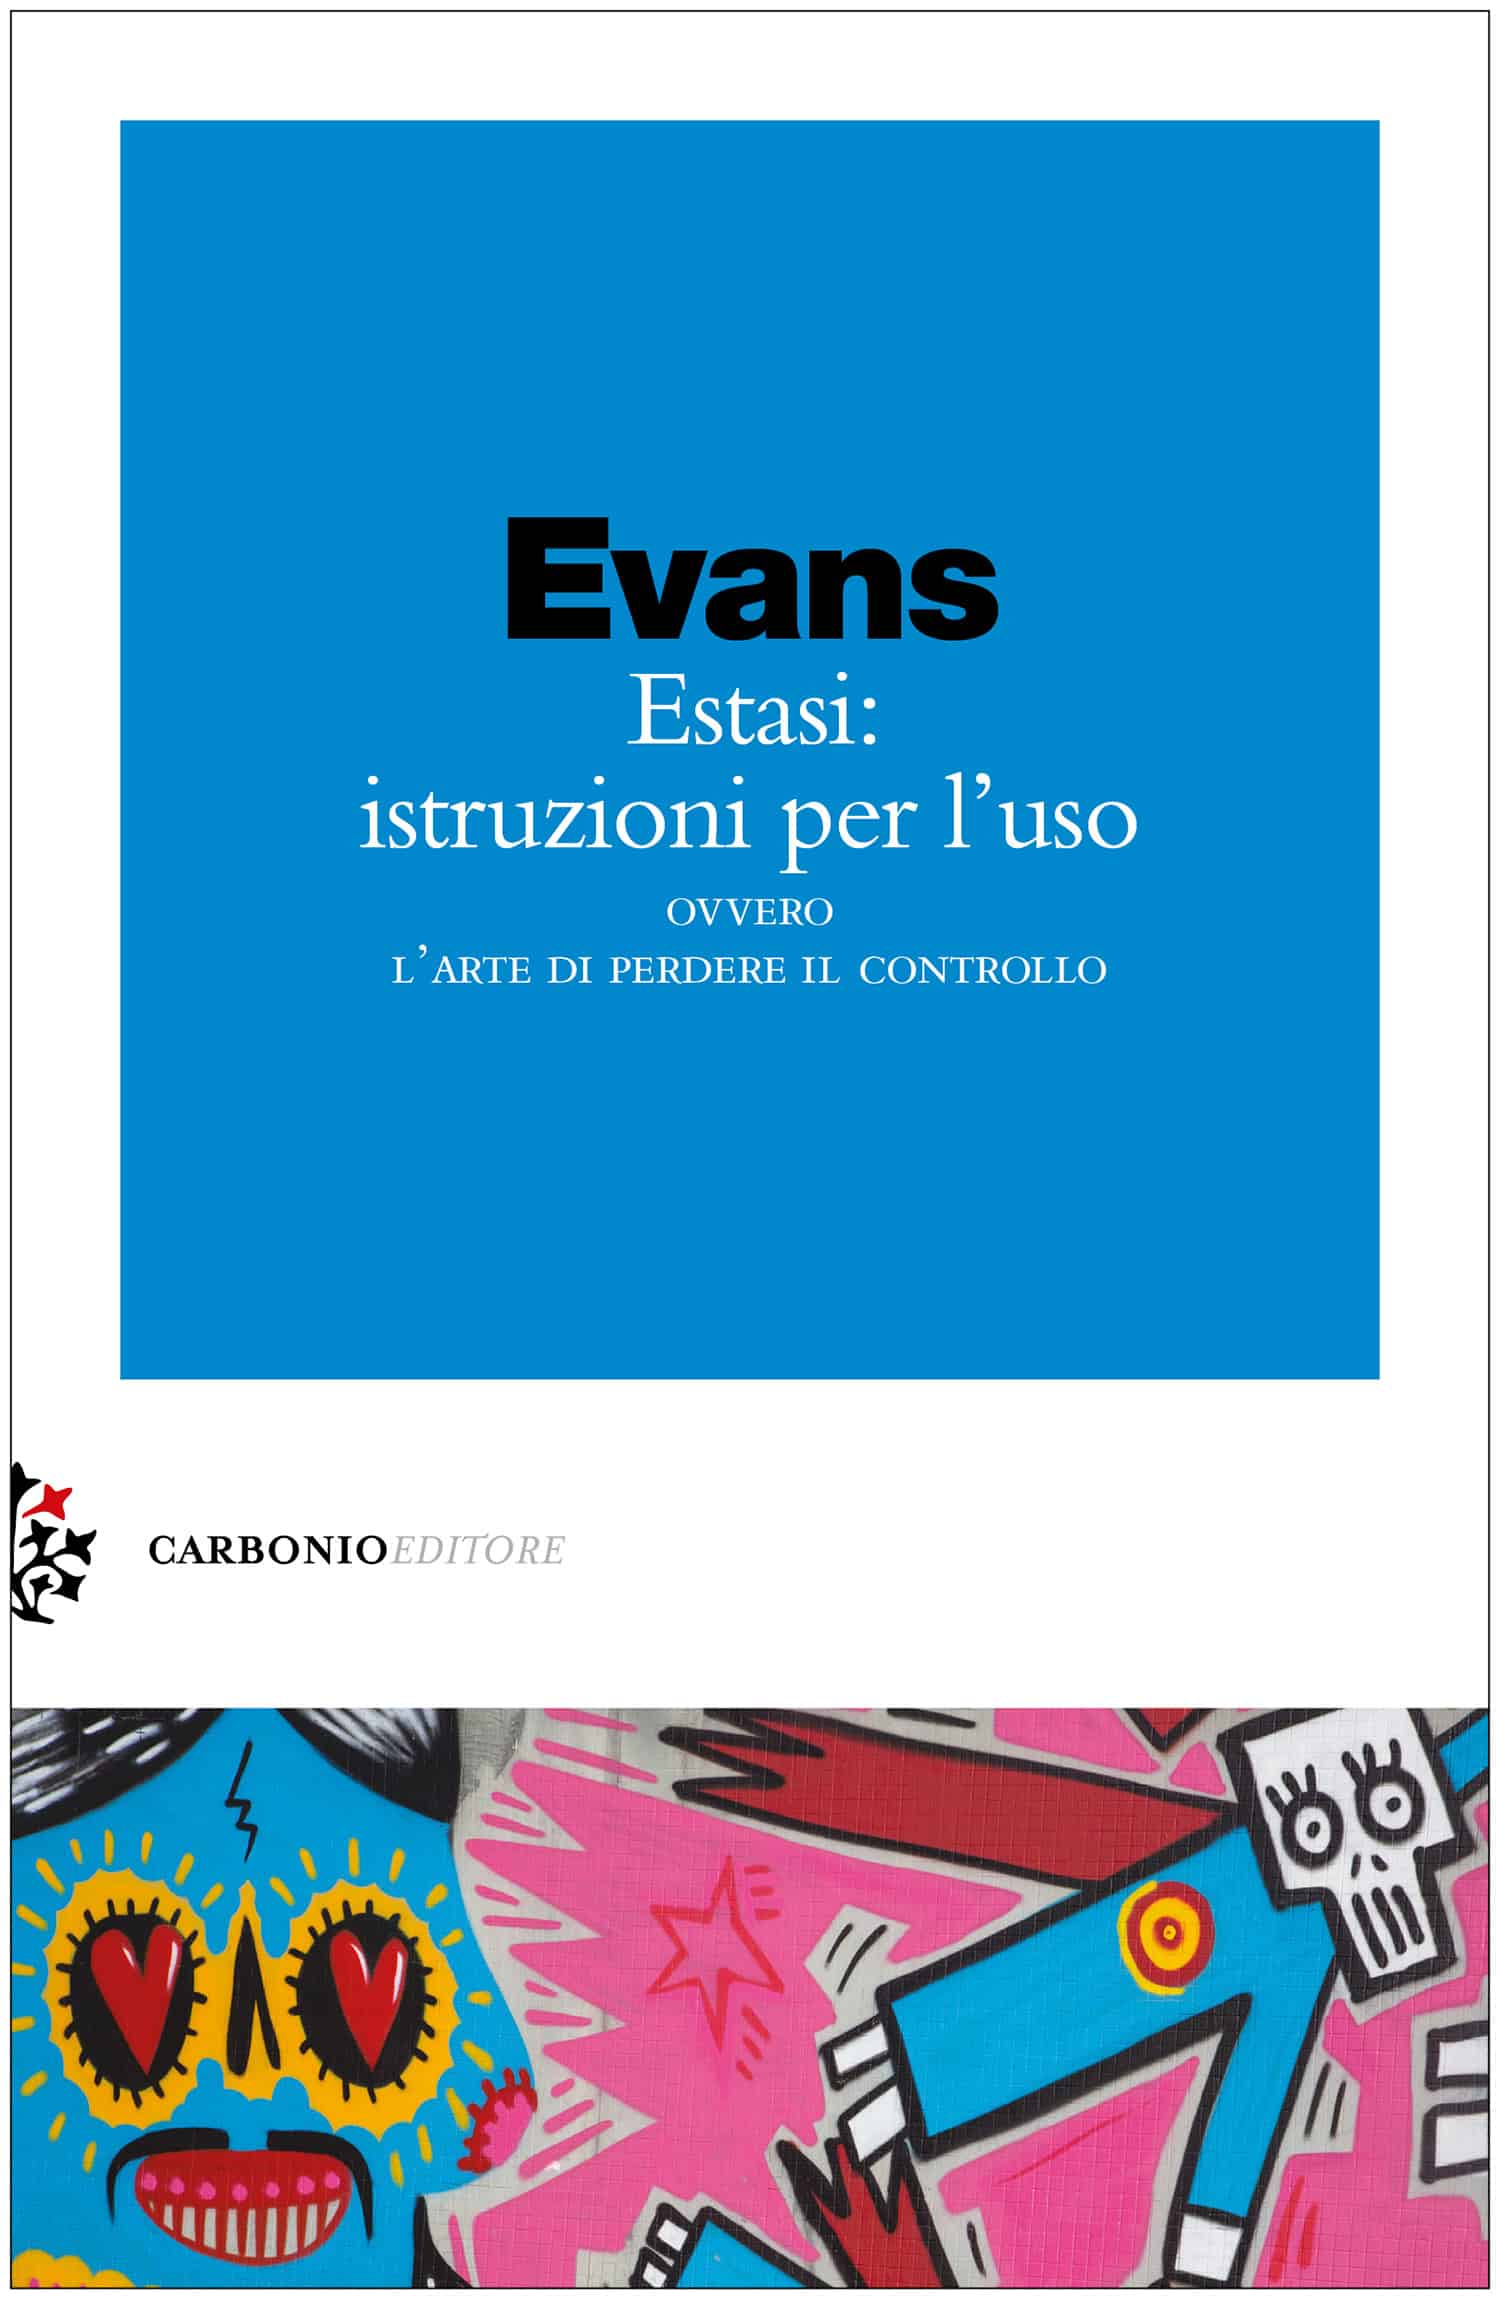 Jules Evans, Estasi: istruzioni per l’uso, Carbonio Editore